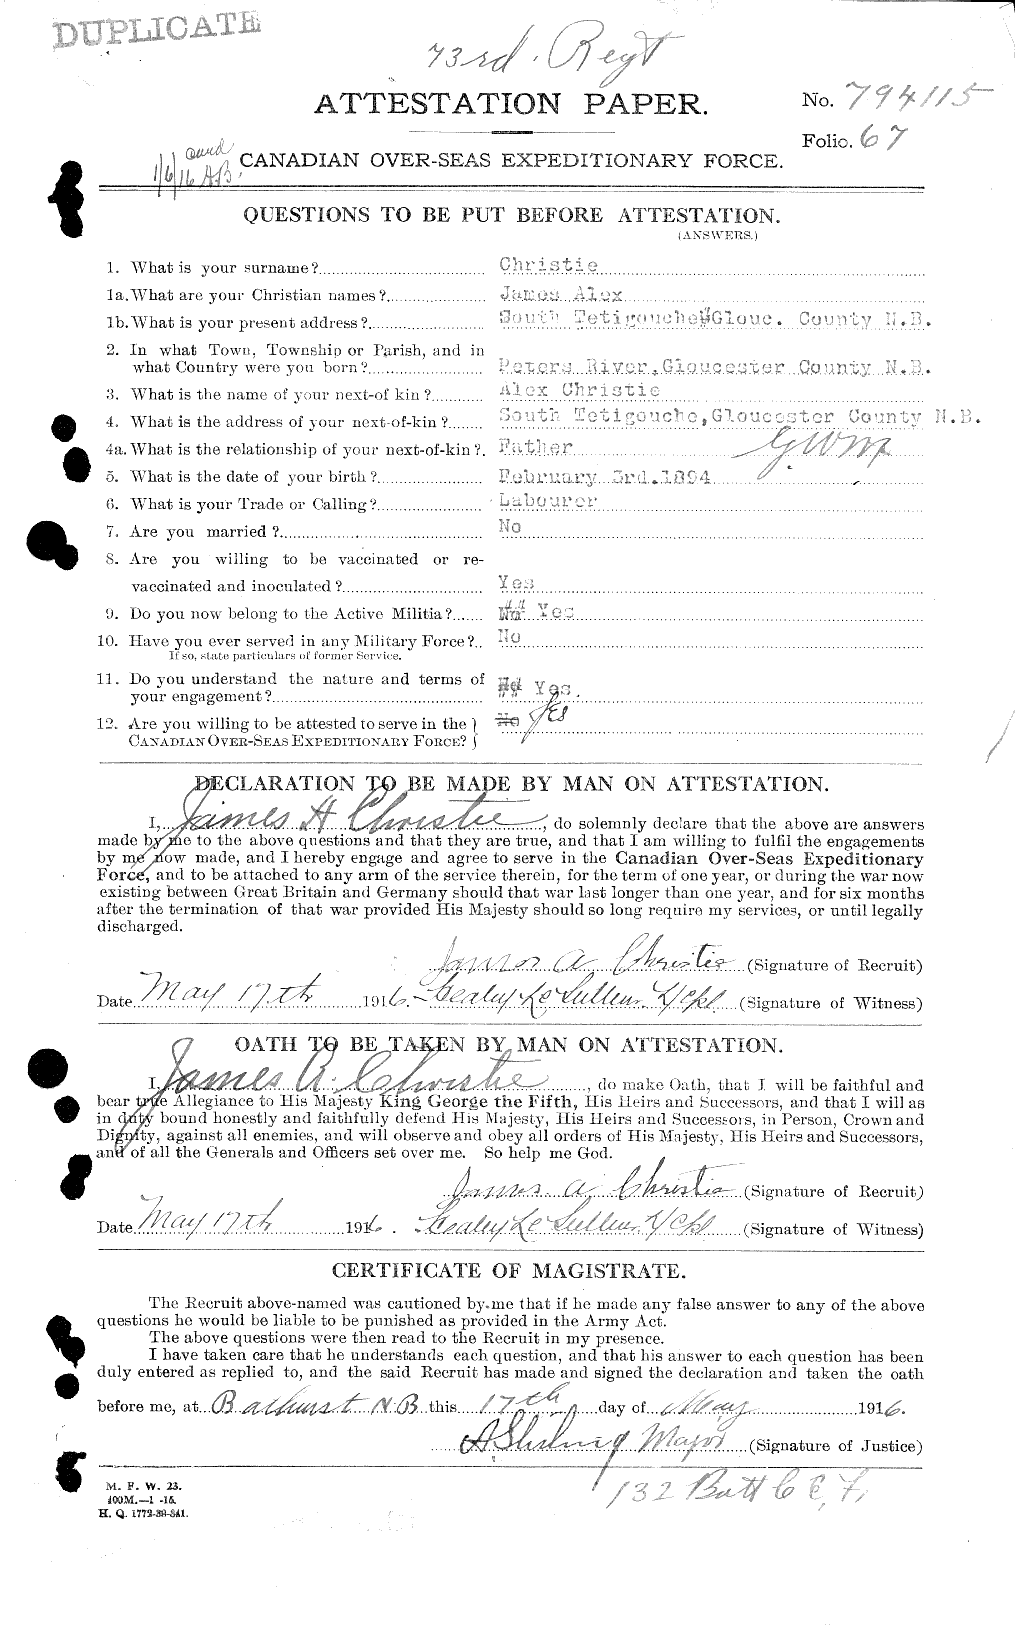 Dossiers du Personnel de la Première Guerre mondiale - CEC 021982a